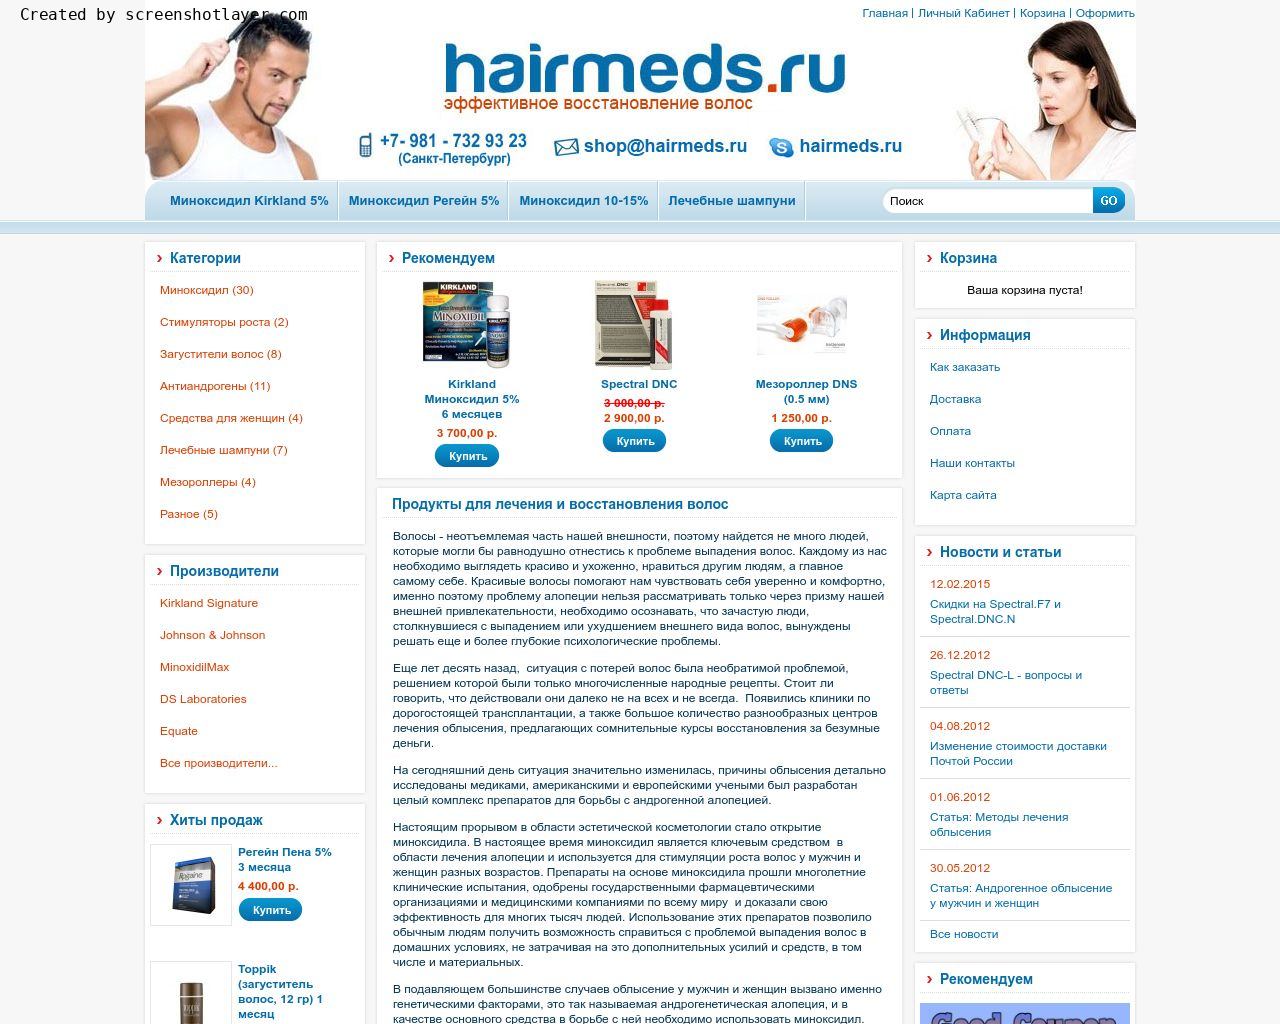 Изображение сайта hairmeds.ru в разрешении 1280x1024